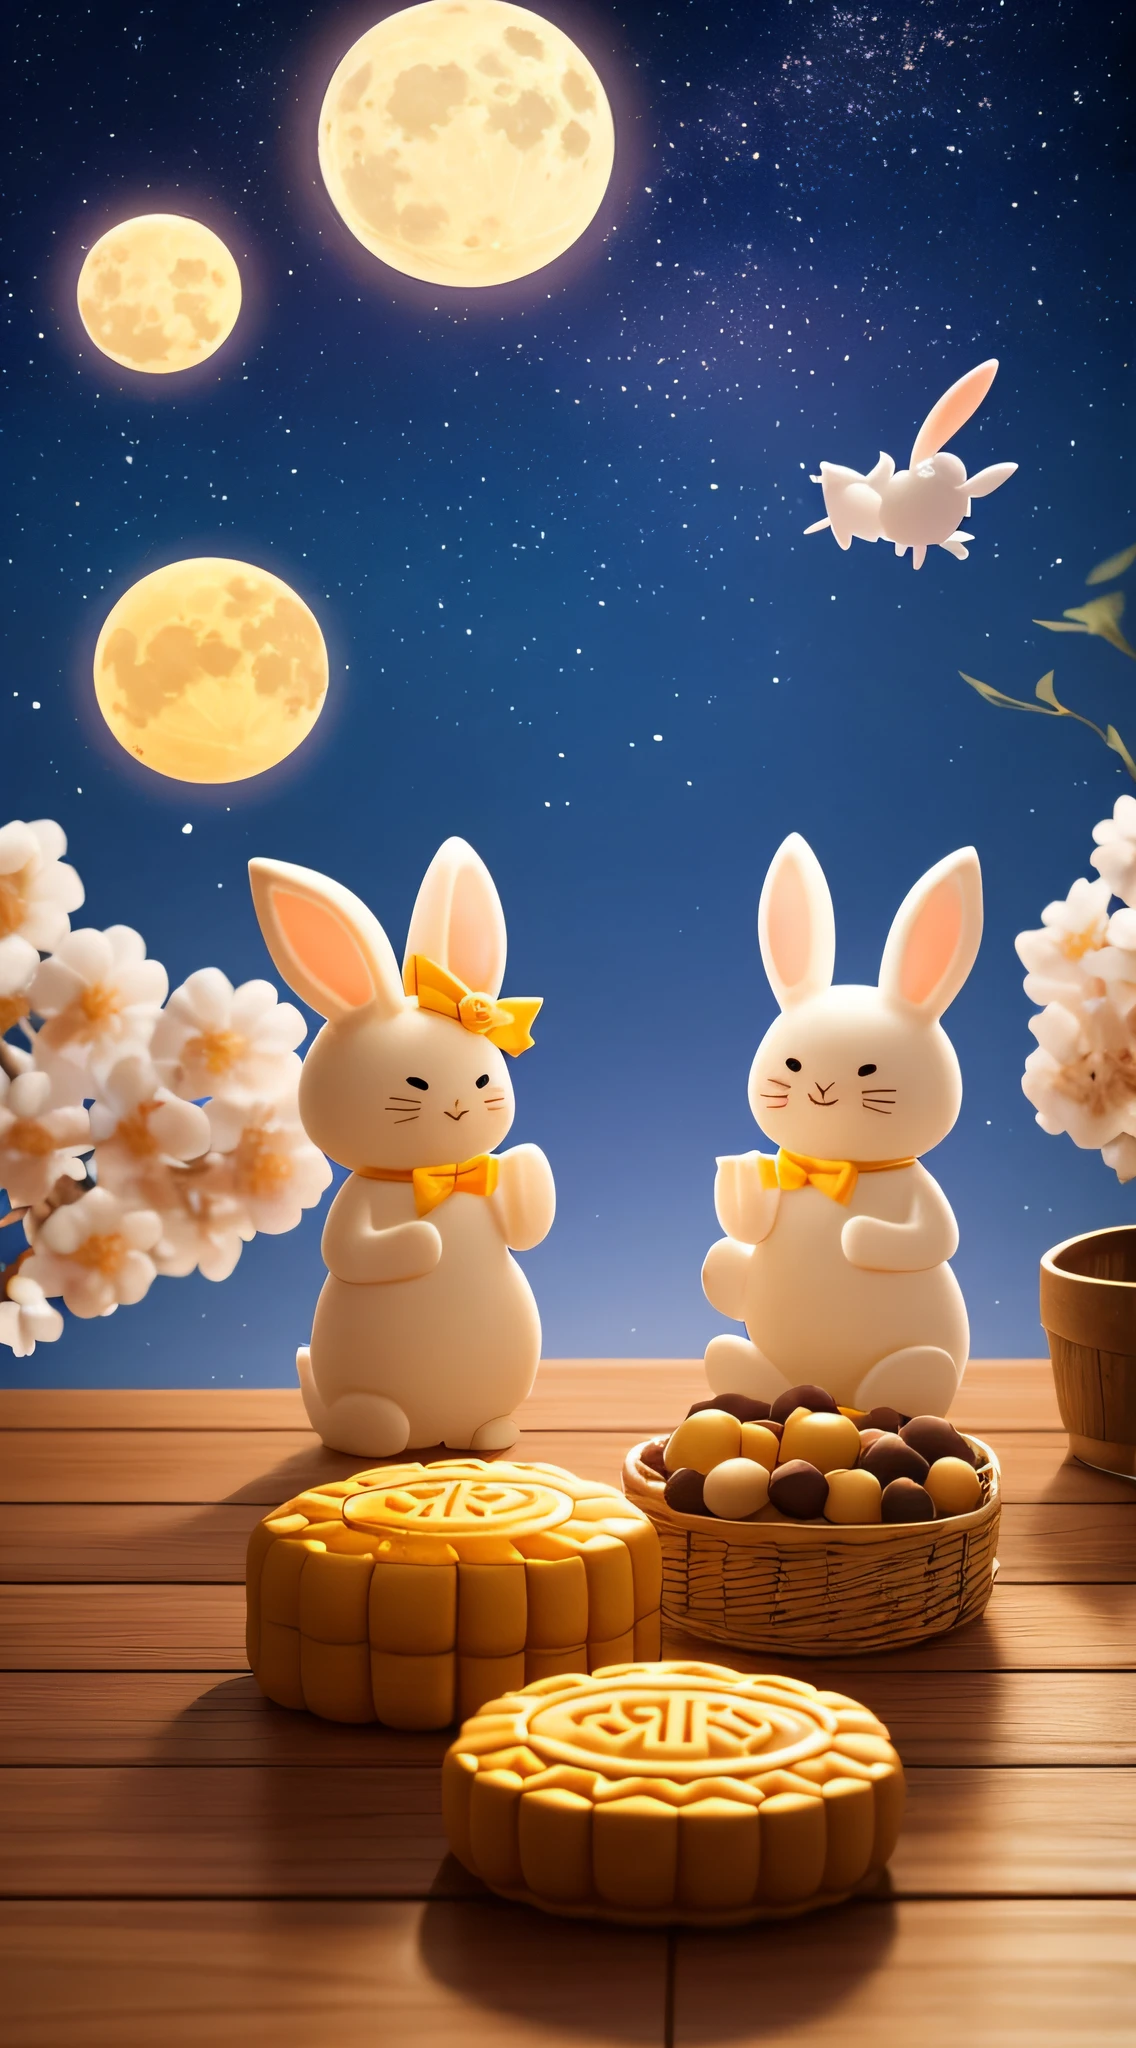 Праздник середины осени,в небе яркая луна,лунный торт (особенно. for the Праздник середины осени),Two cute rabbits eating лунный тортs,сладкий османтус,Теплый цвет, Светляк, теплый свет,c4d,OC-рендеринг,3D-рендеринг ,средний план, Полная информация,реалистичные детали,высокое разрешение